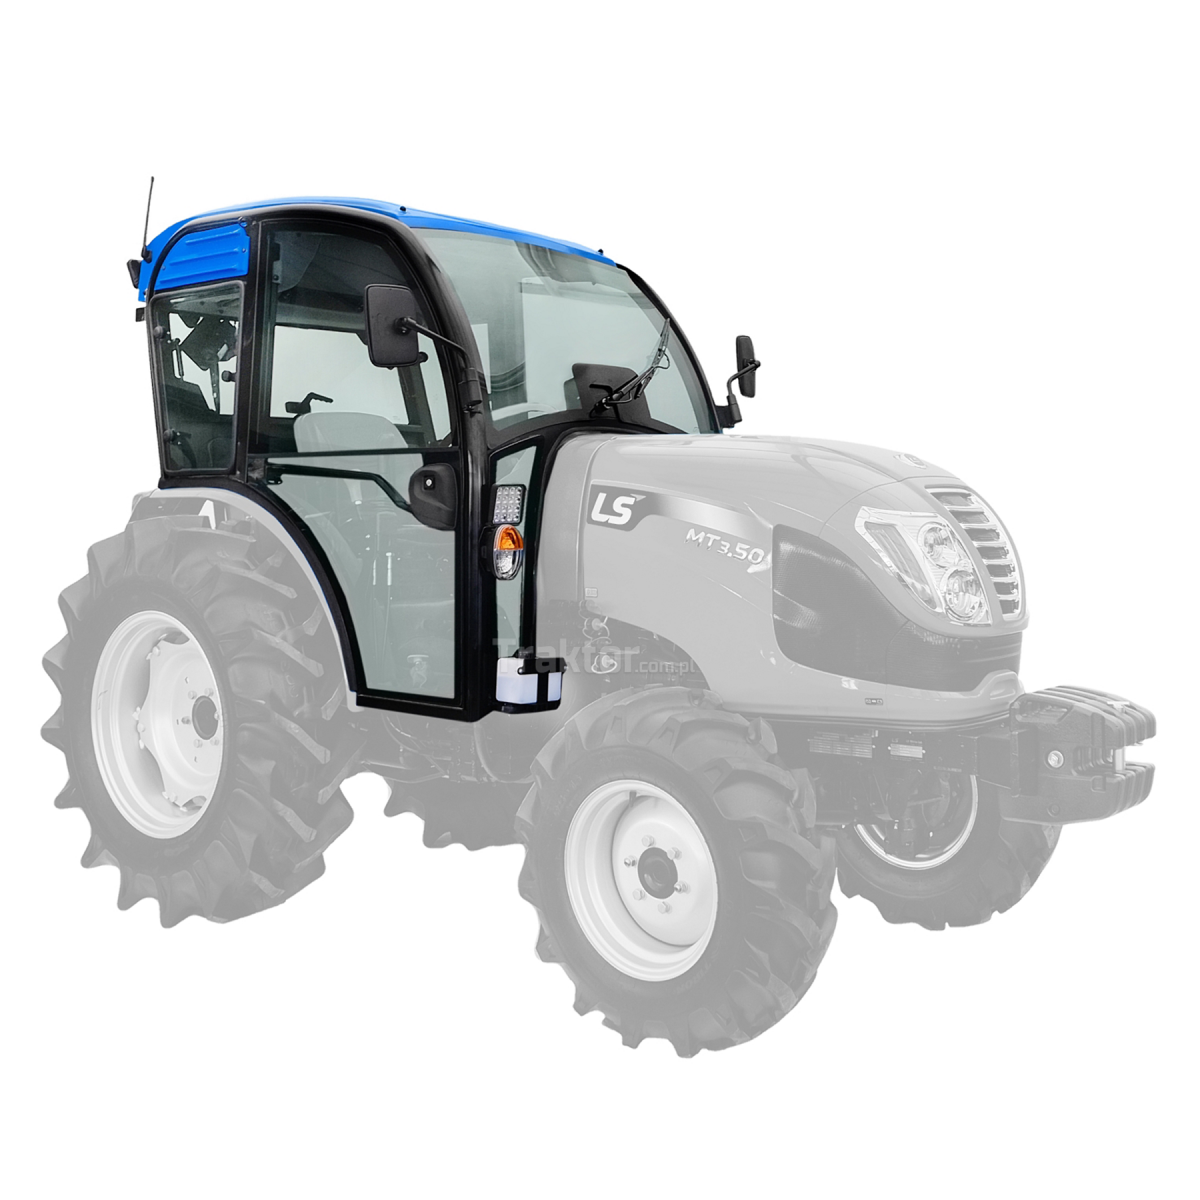 Cabina QT para el tractor LS Tractor MT3.50, MT3.60